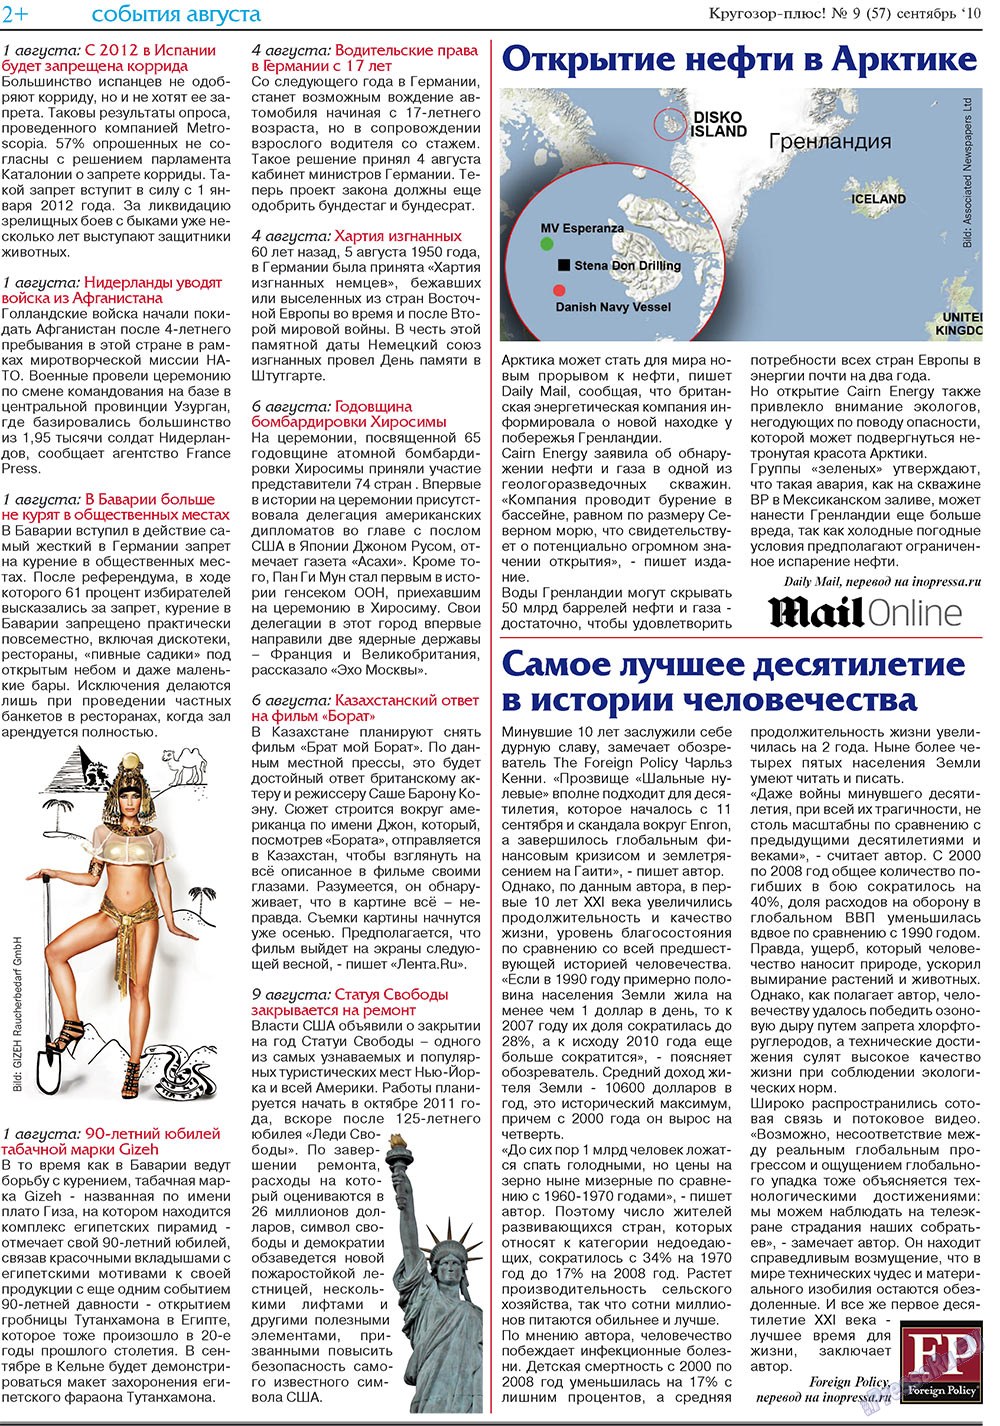 Кругозор плюс!, газета. 2010 №9 стр.18